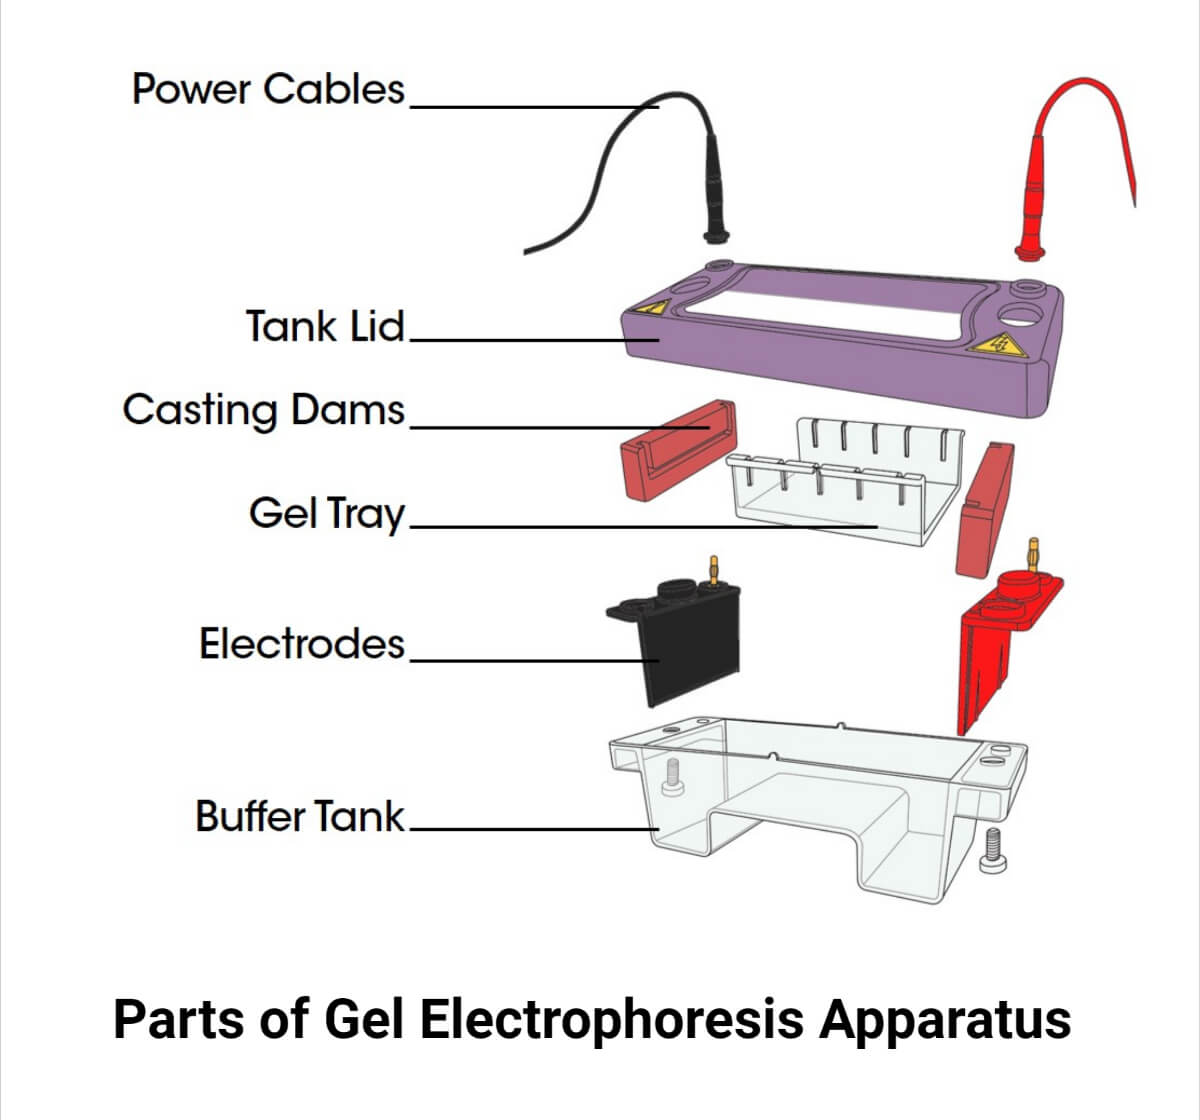 Partes del aparato de electroforesis en gel